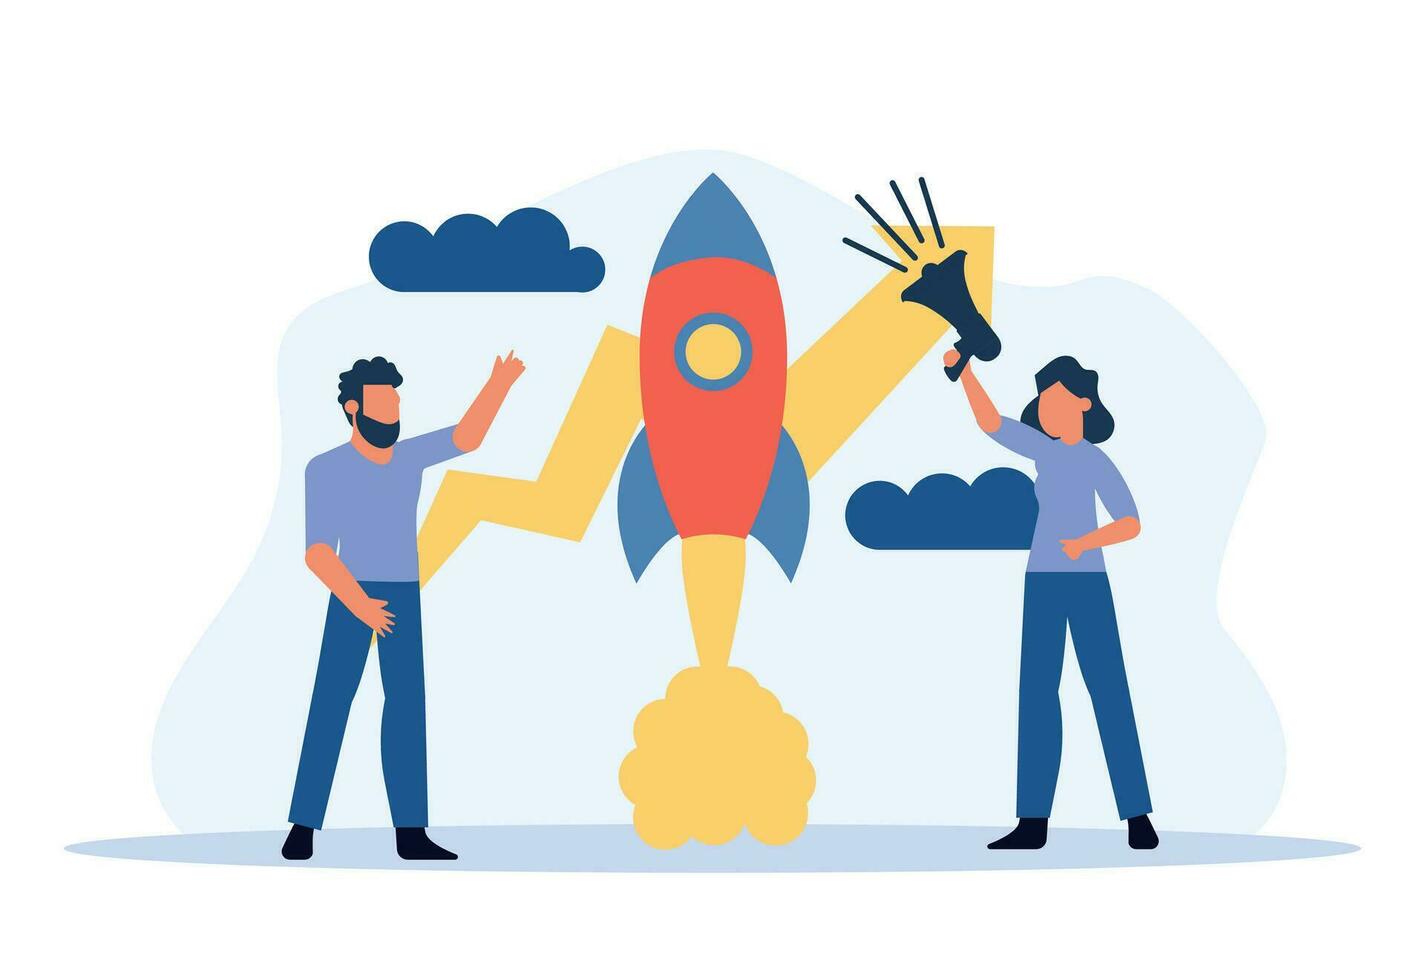 Business Analytics in Cloud Arrow Vector Leadership Company. Menschen fordern Teamarbeit heraus. flache jobmarketing-konzeptillustration. Wachstum mit Rocket Investment Service. Trendergebnis für Mann und Frau